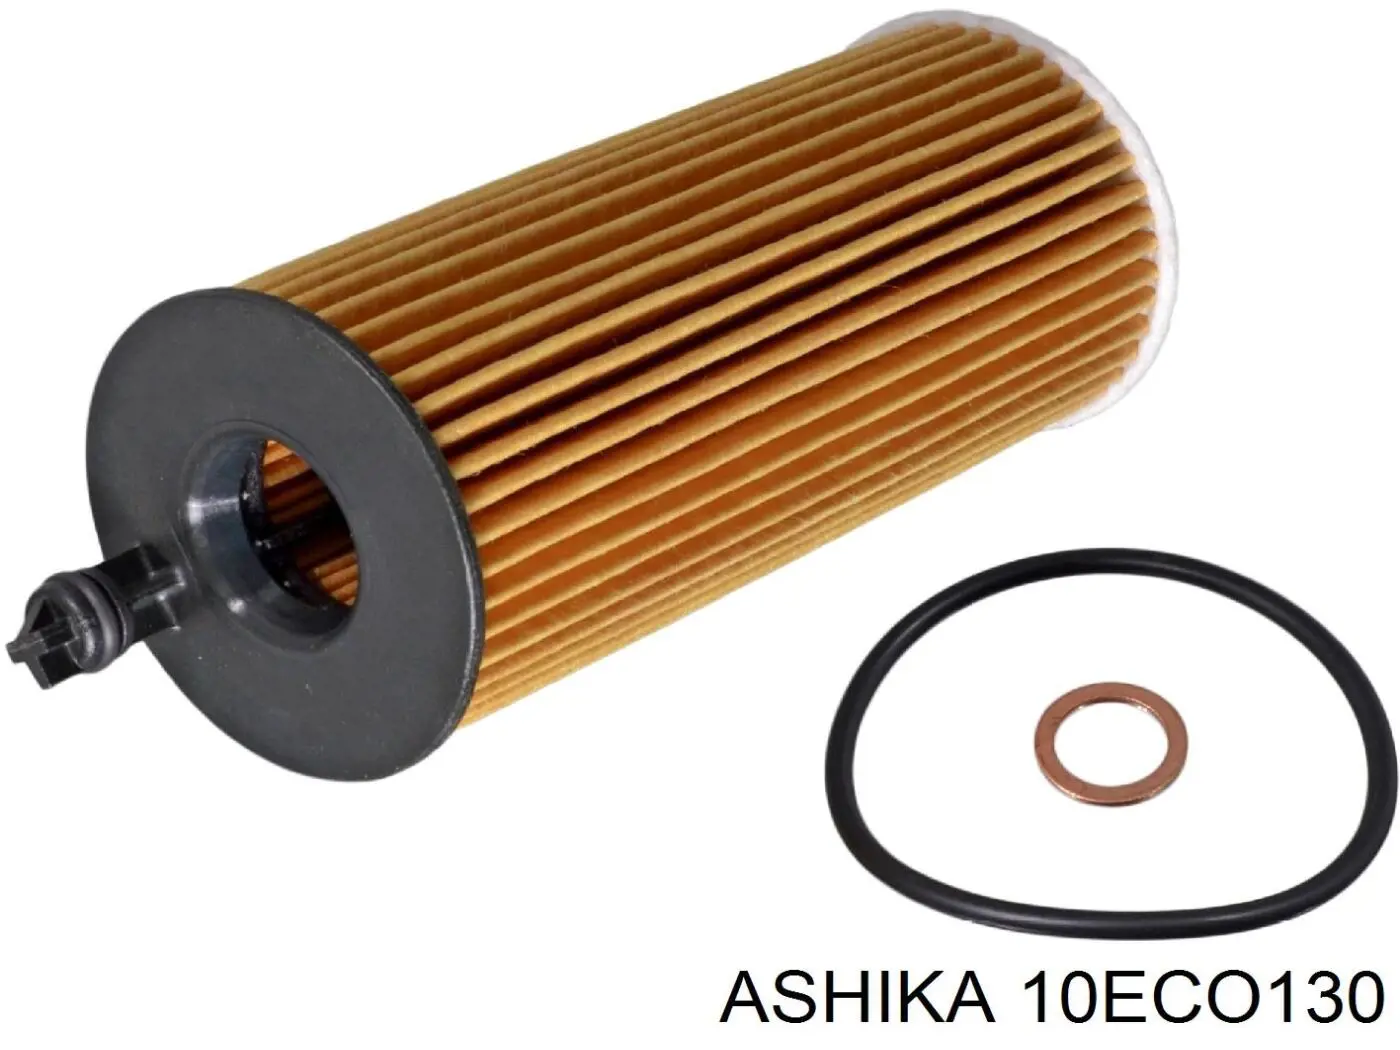 10-ECO130 Ashika filtro de aceite